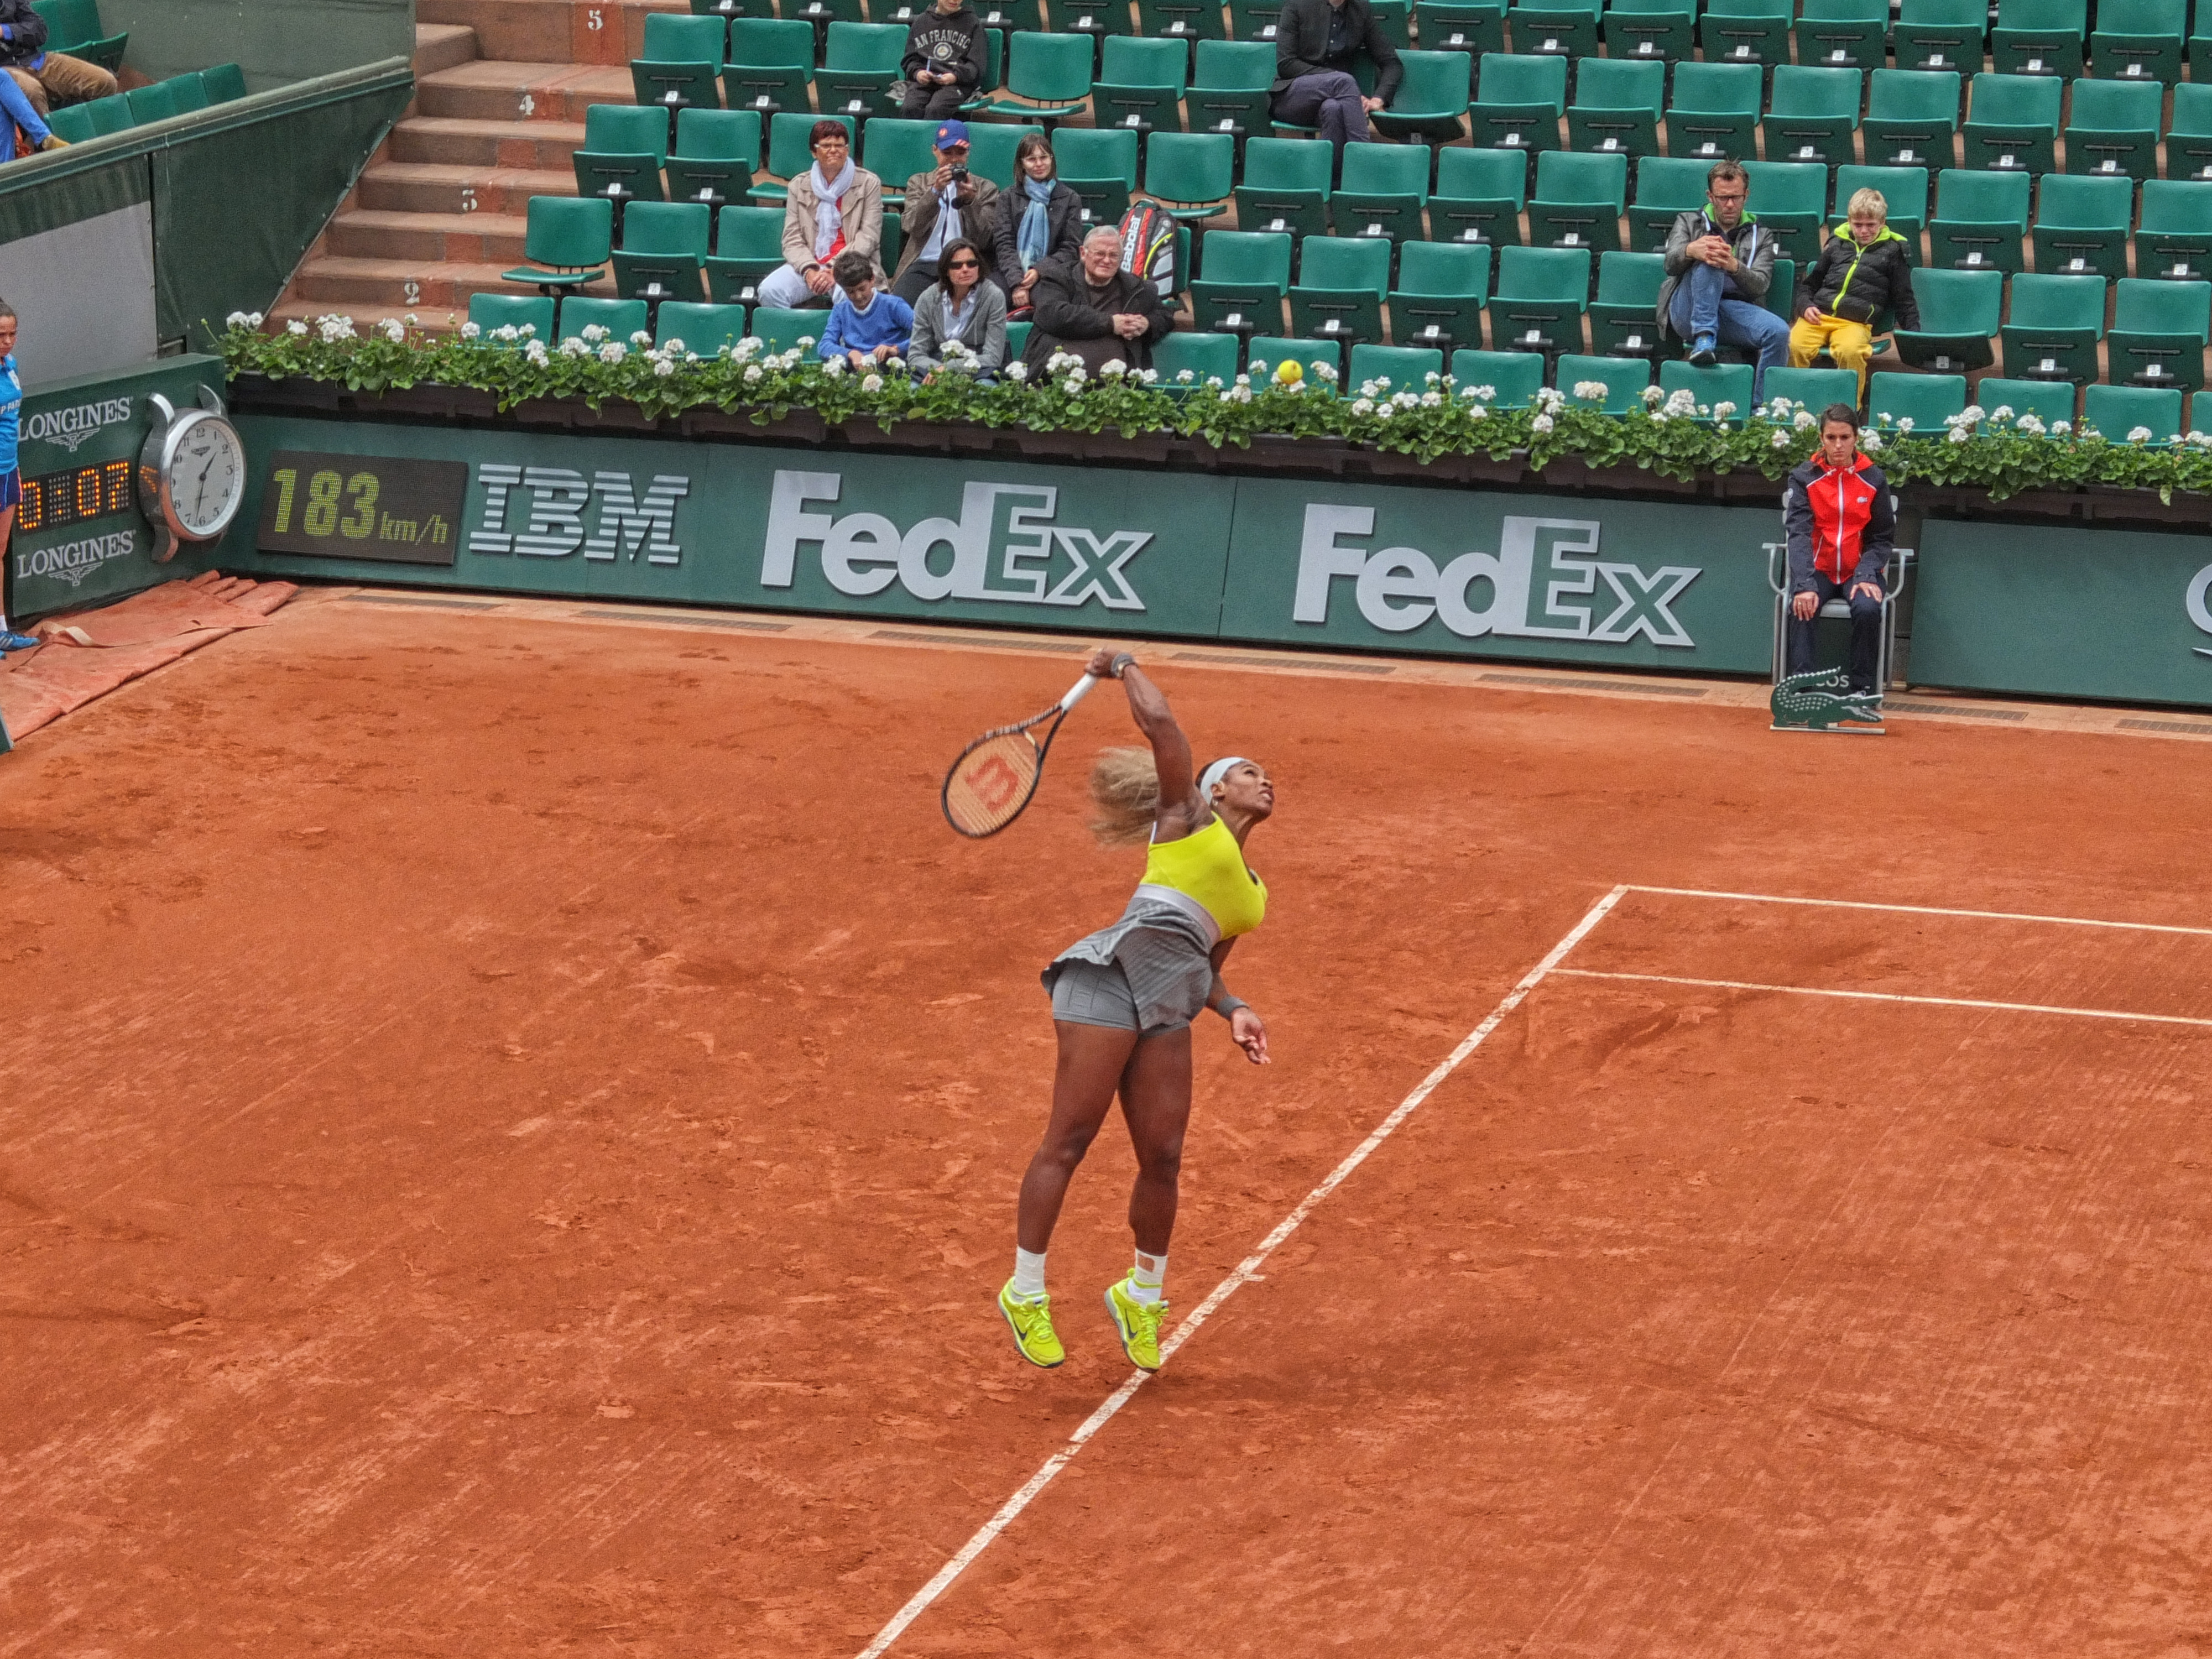 Serena mid-serve